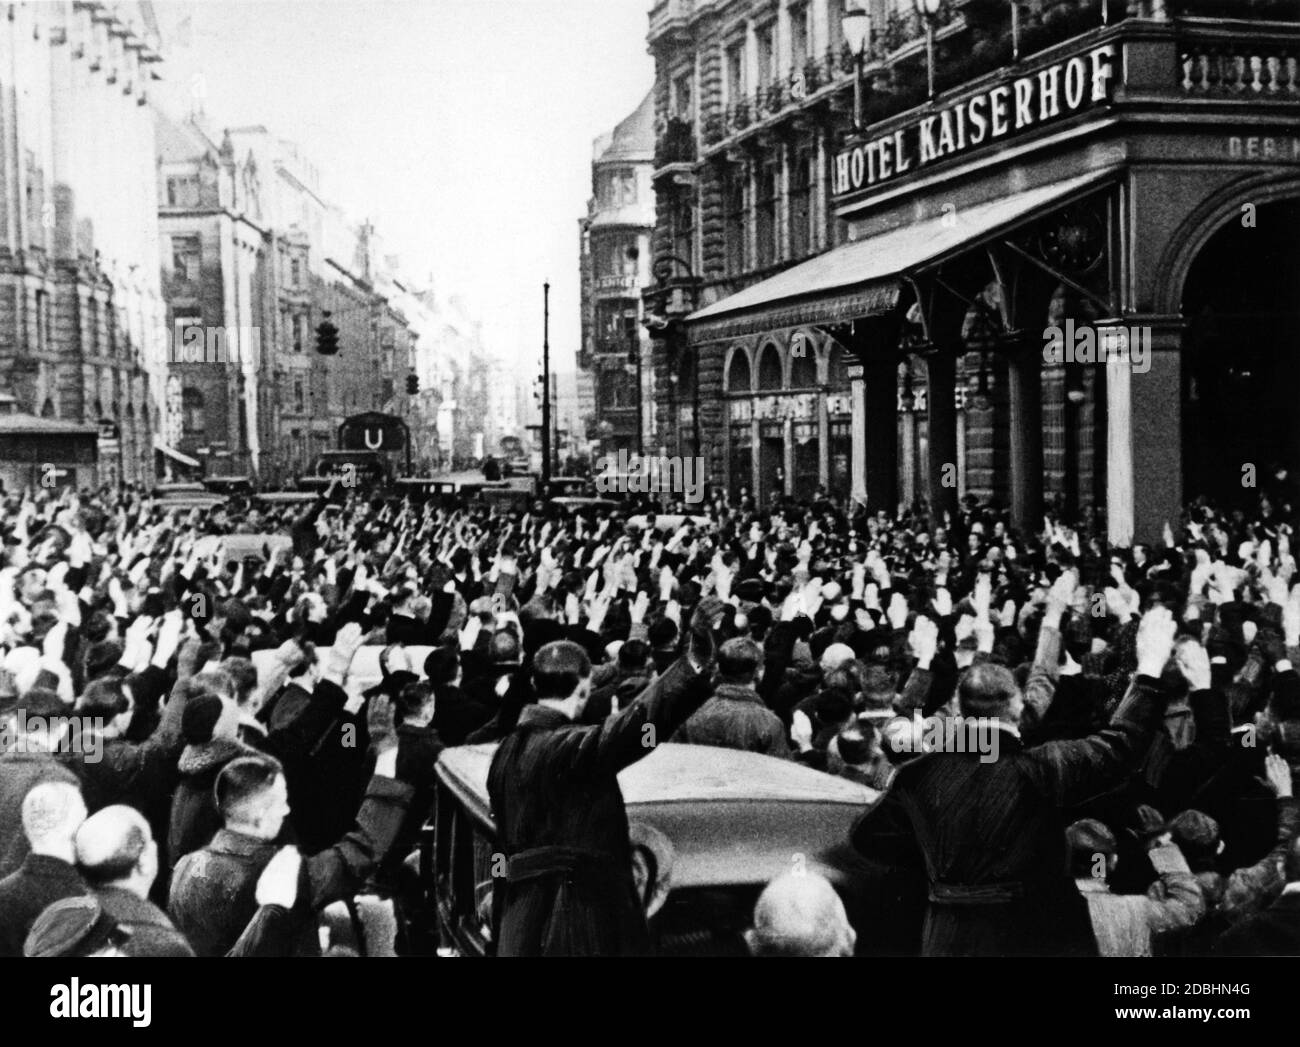 Nach seiner Ernennung durch Paul von Hindenburg bei seiner Rückkehr in seine Unterkunft begrüßt eine Menschenmenge den neu ernannten Reichskanzler Adolf Hitler. Stockfoto